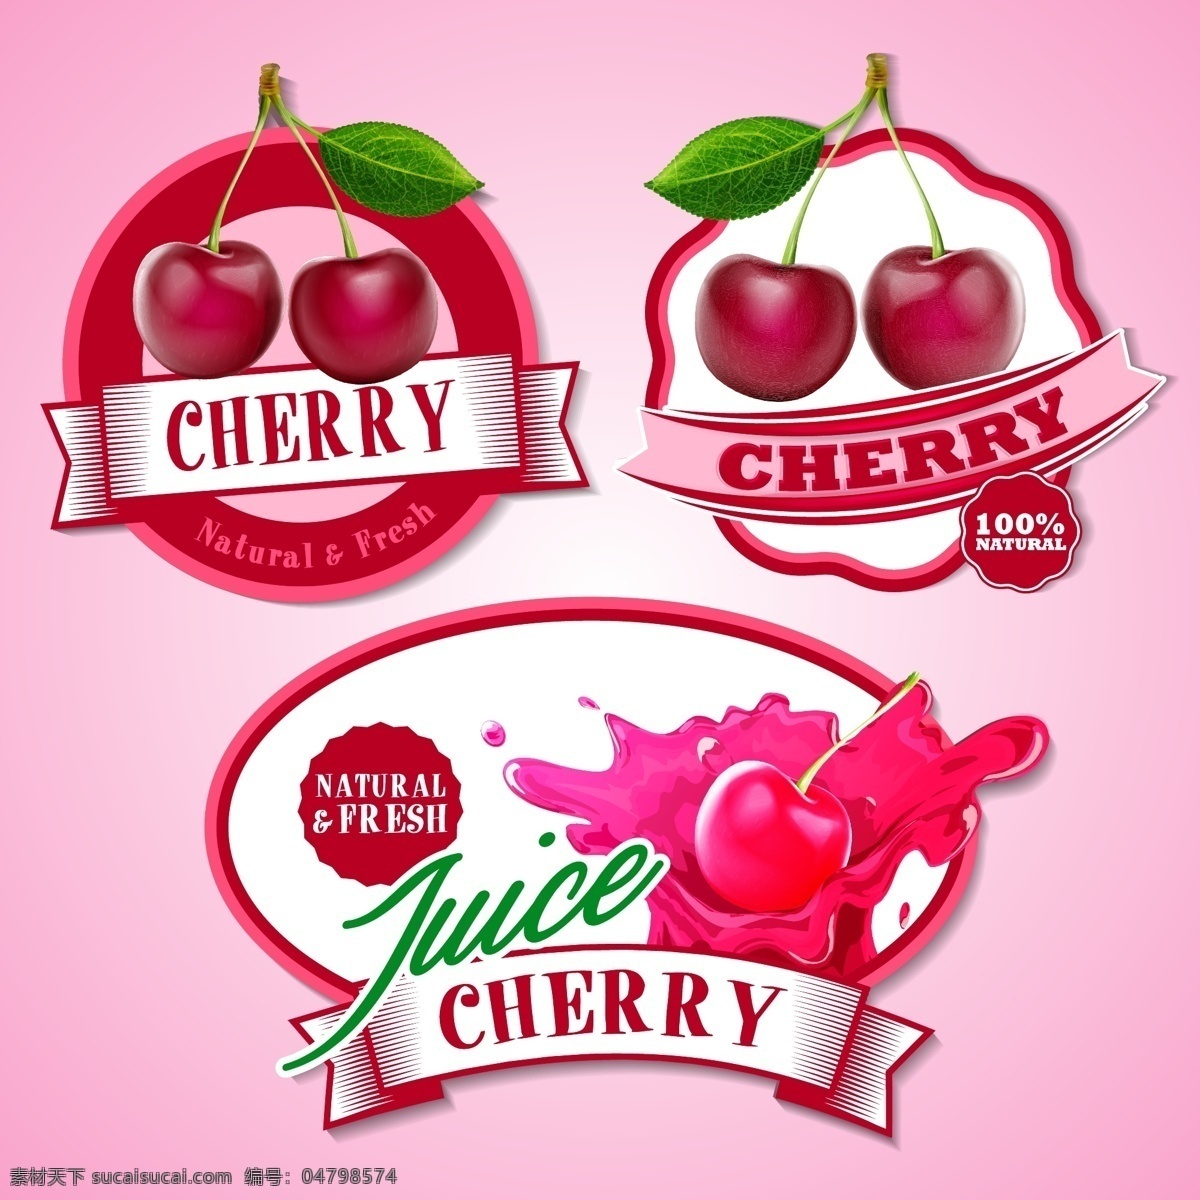 精美 水果 饮料 广告 素 标签 标贴 草莓 樱桃 桔子 果汁 果味饮料 徽章 横幅